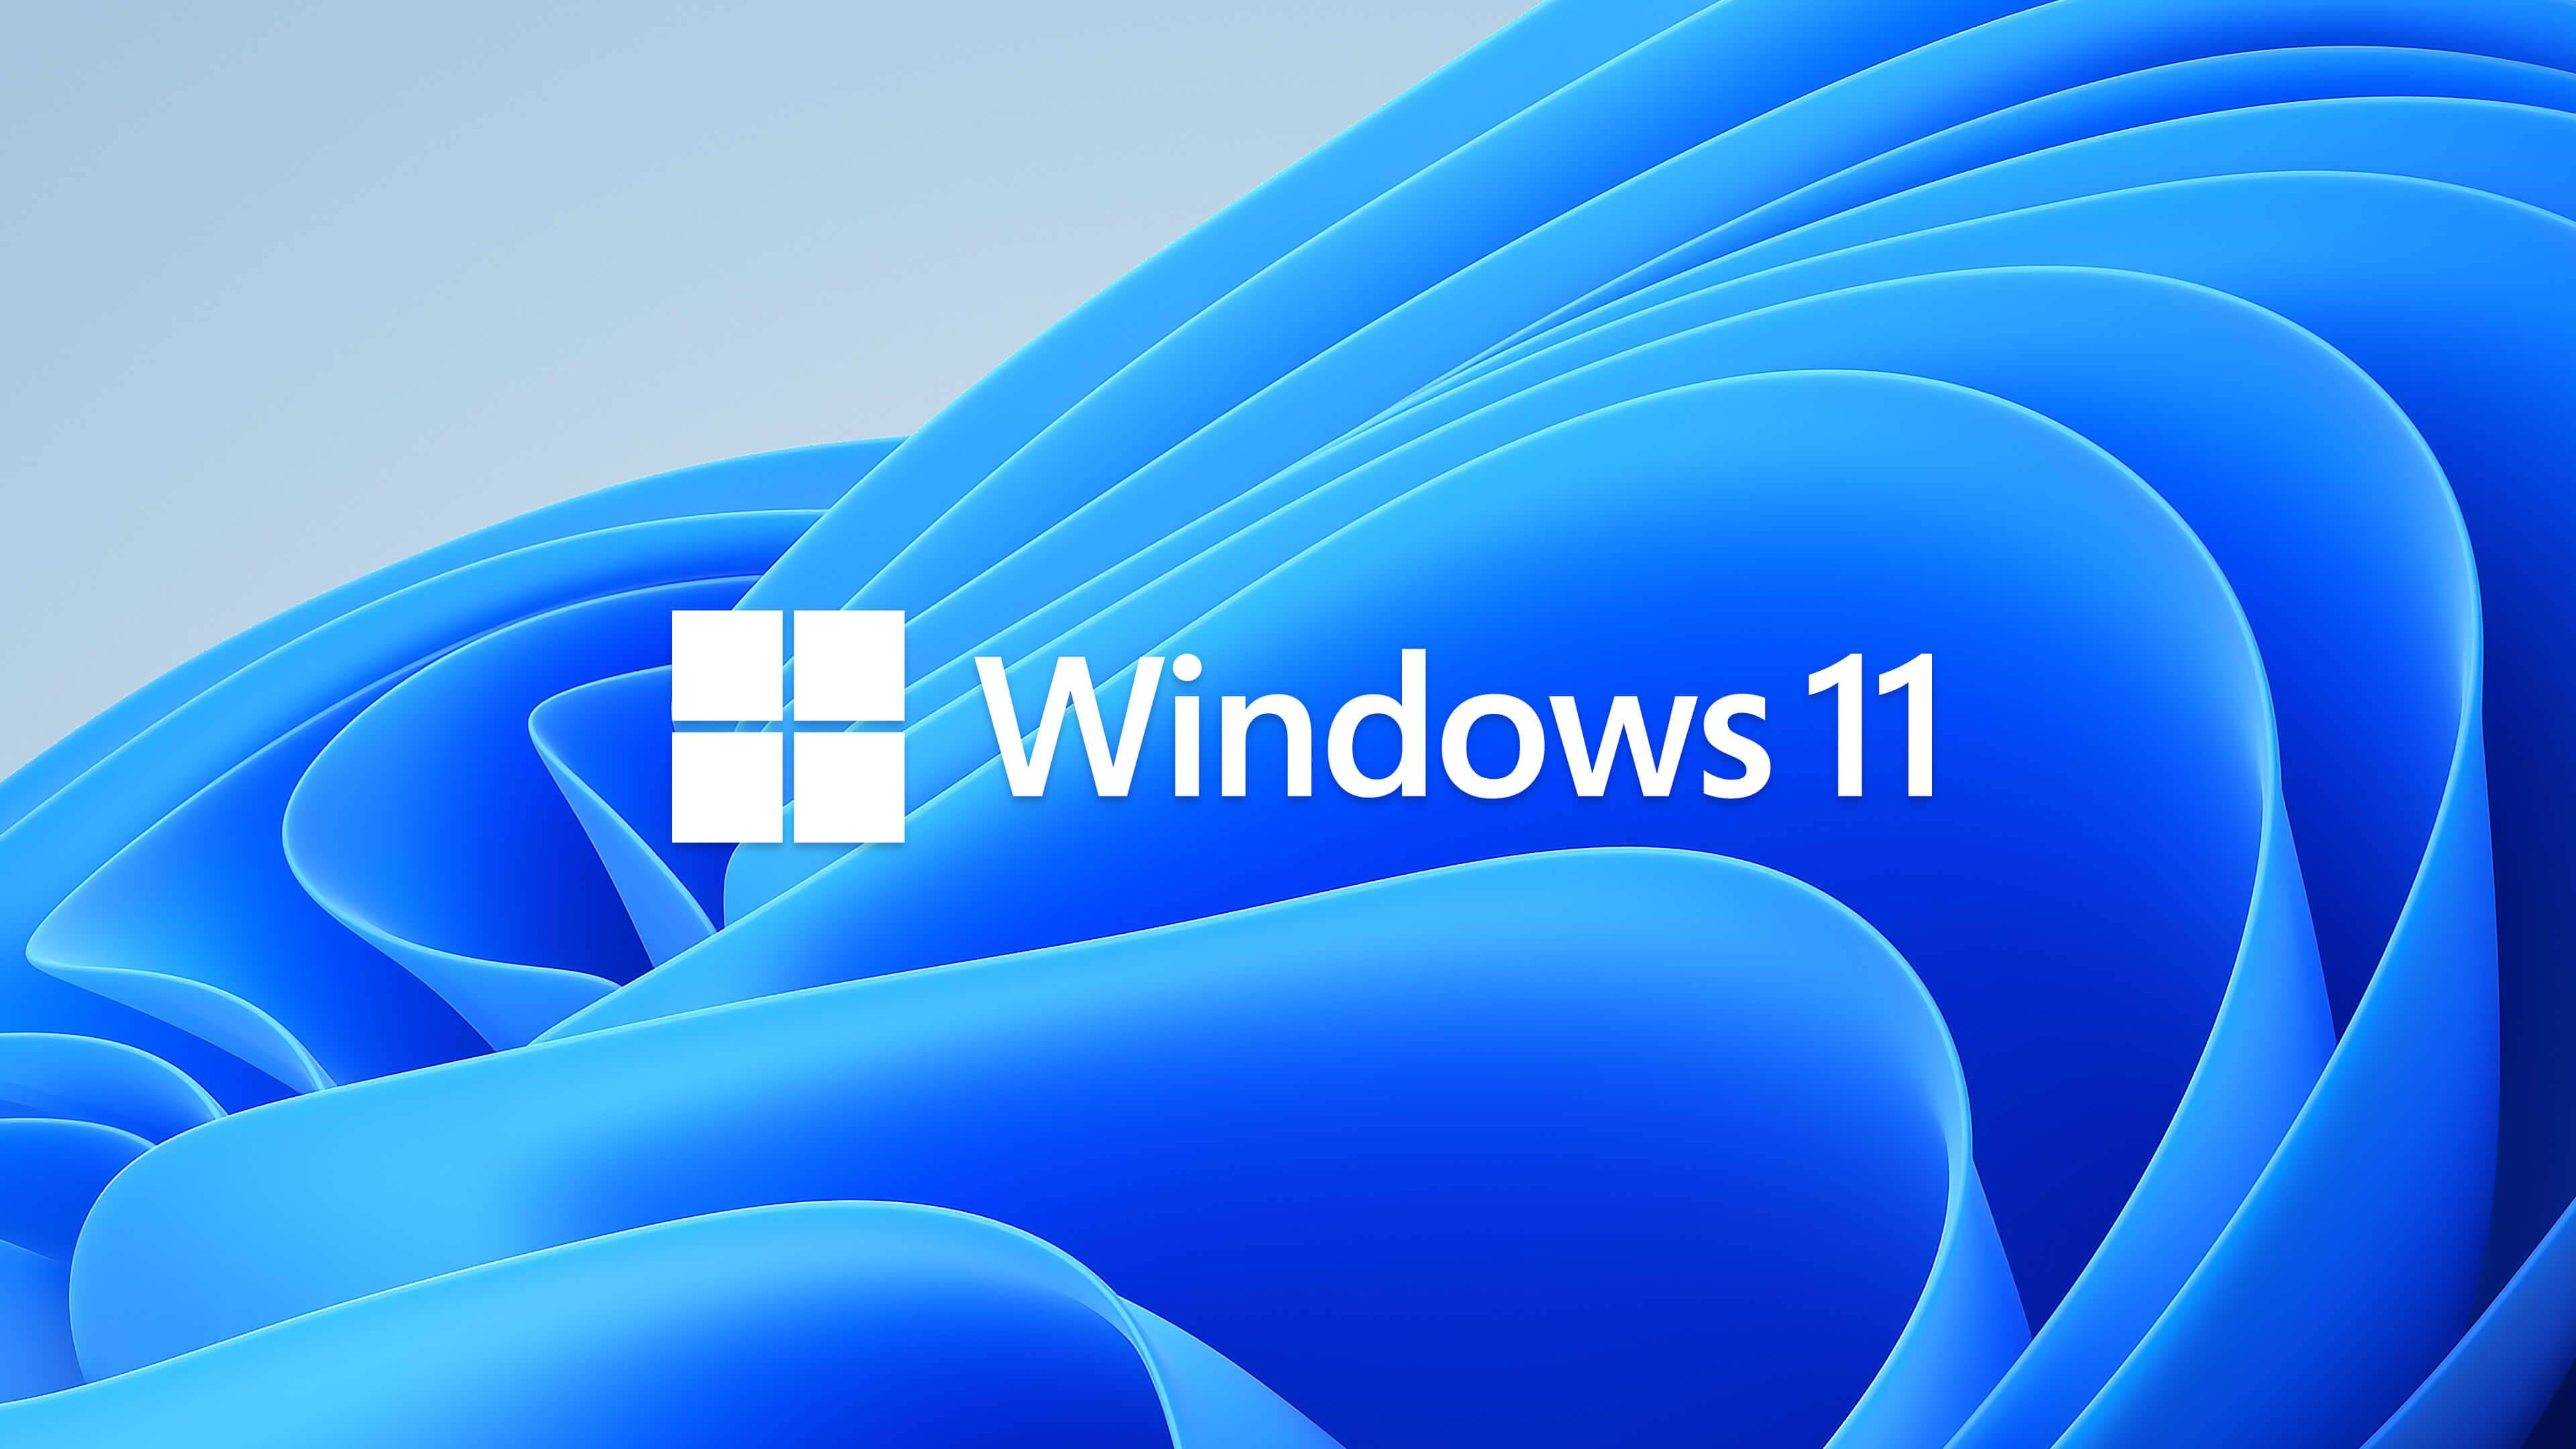 15 个最佳 Windows 11 主题和皮肤可供免费下载